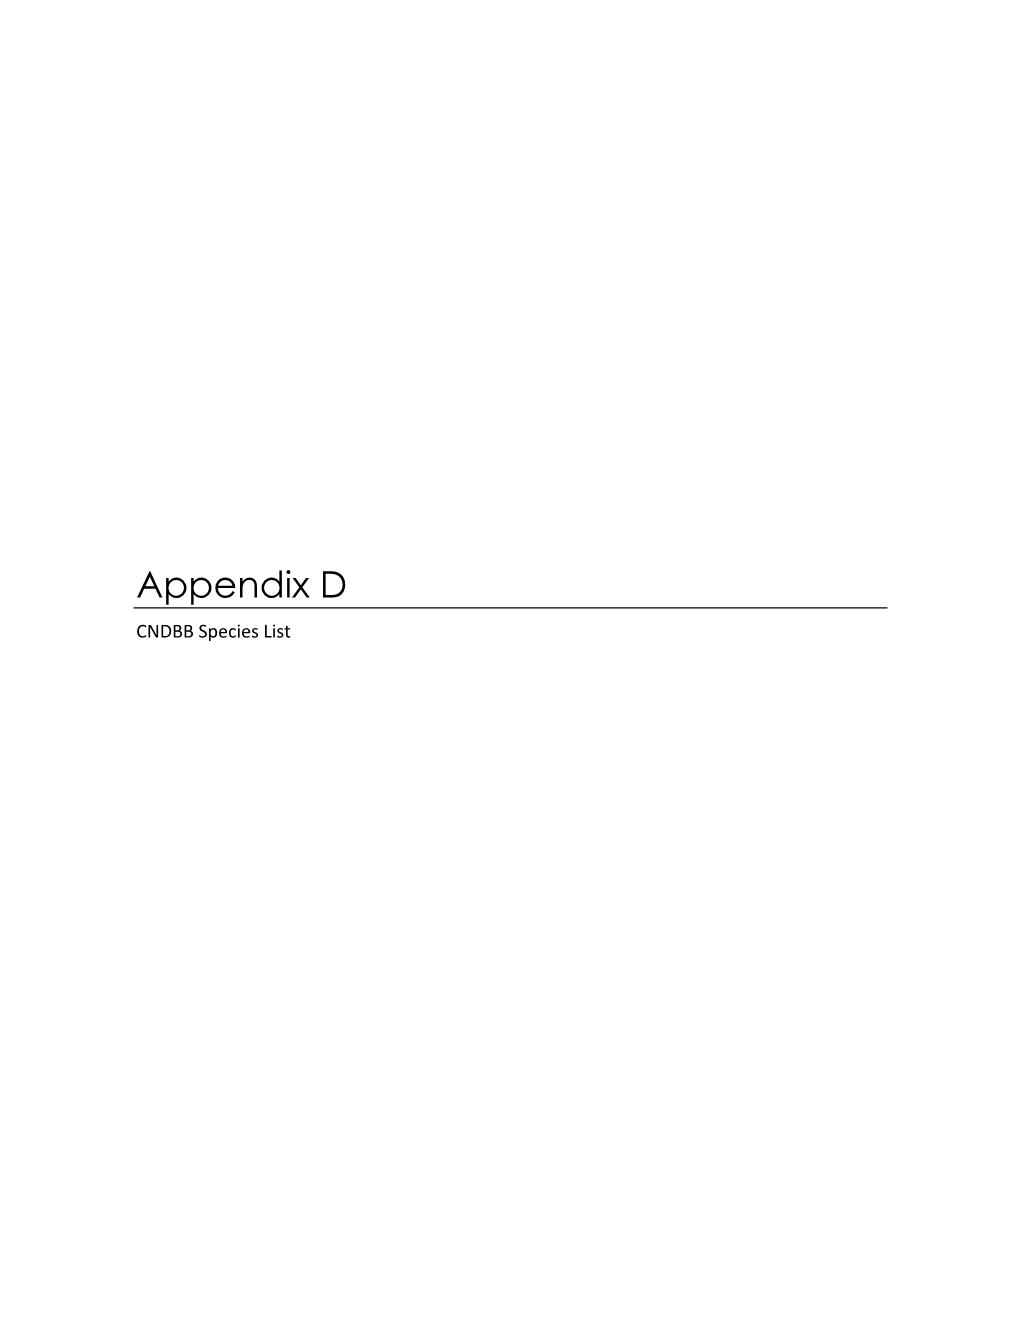 Appendix D CNDBB Species List